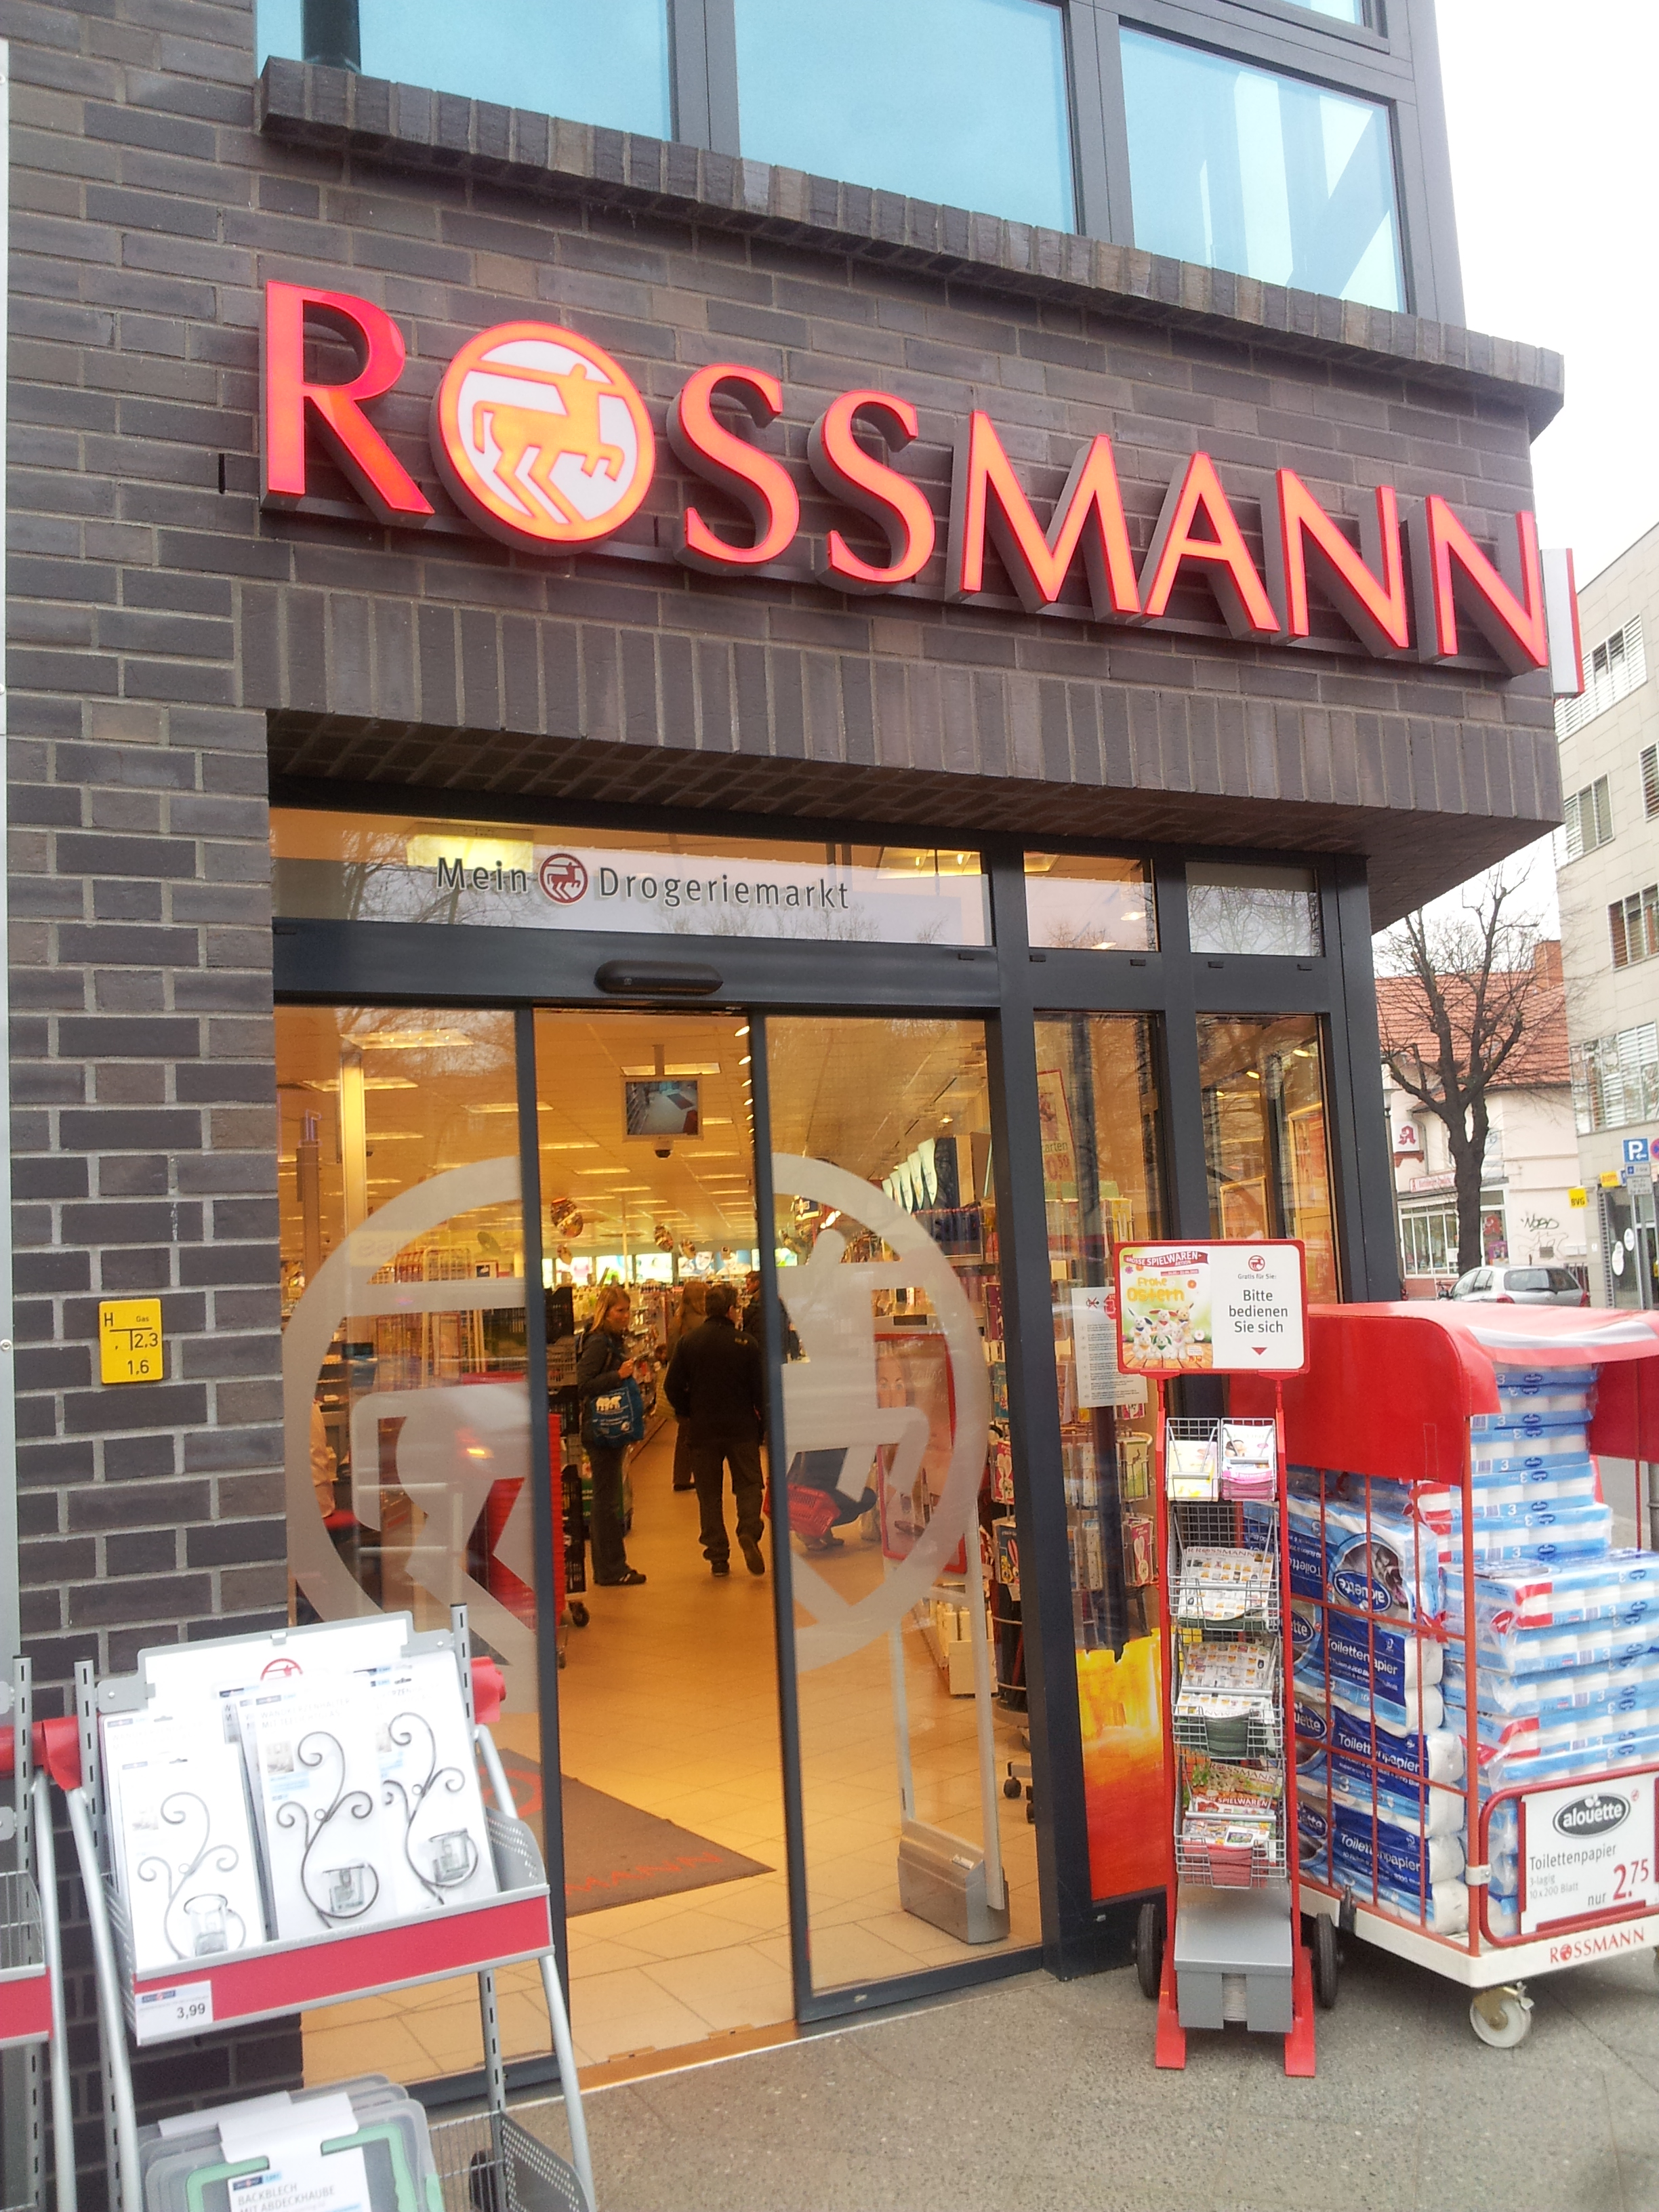 Rossmann Drogeriemarkte 10318 Berlin Karlshorst Offnungszeiten Adresse Telefon